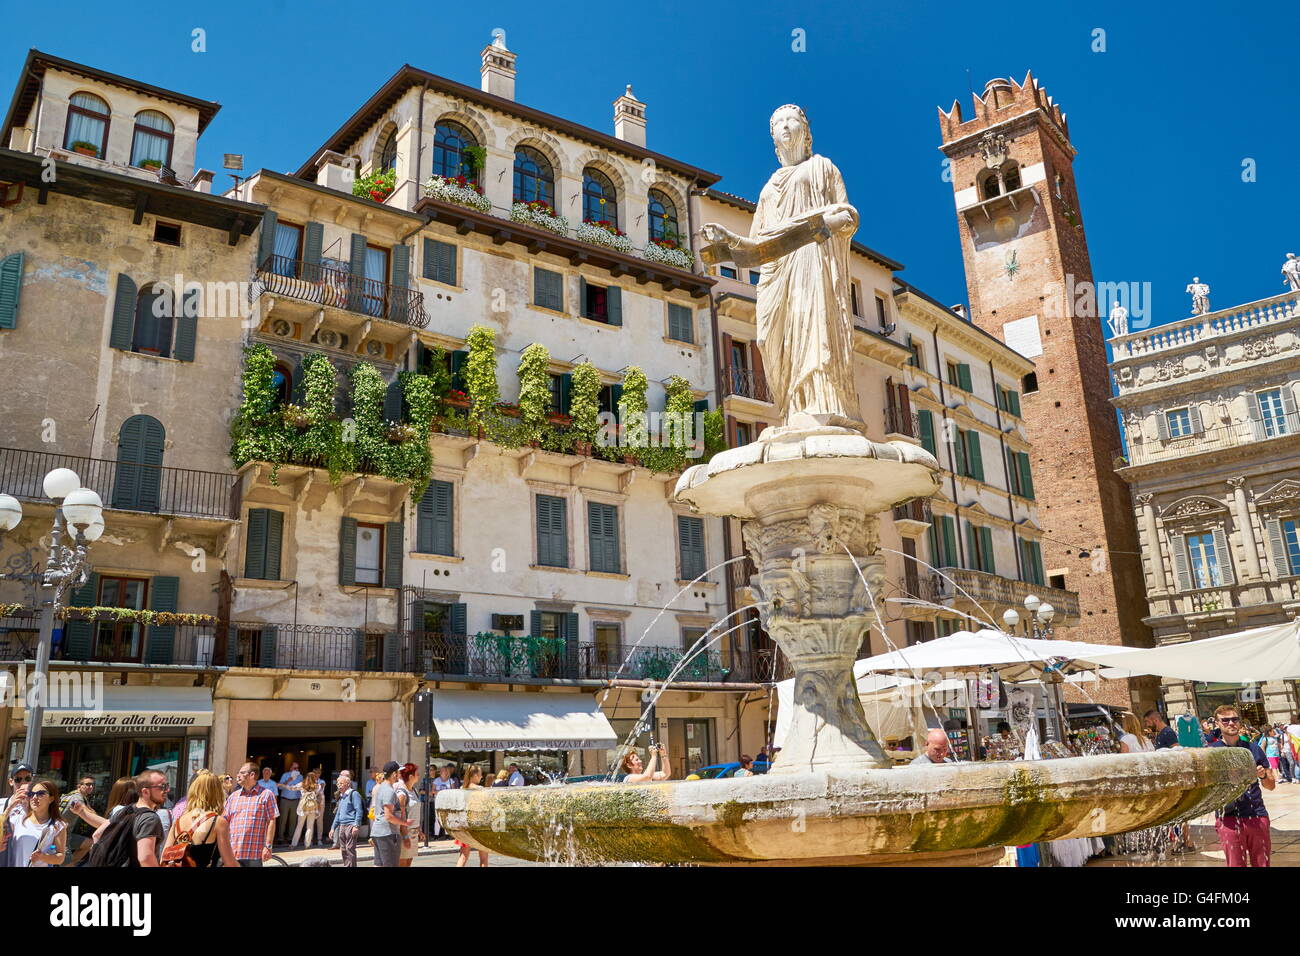 Fountain at Piazza delle Erbe, Verona old town, Veneto region, Italy Stock Photo